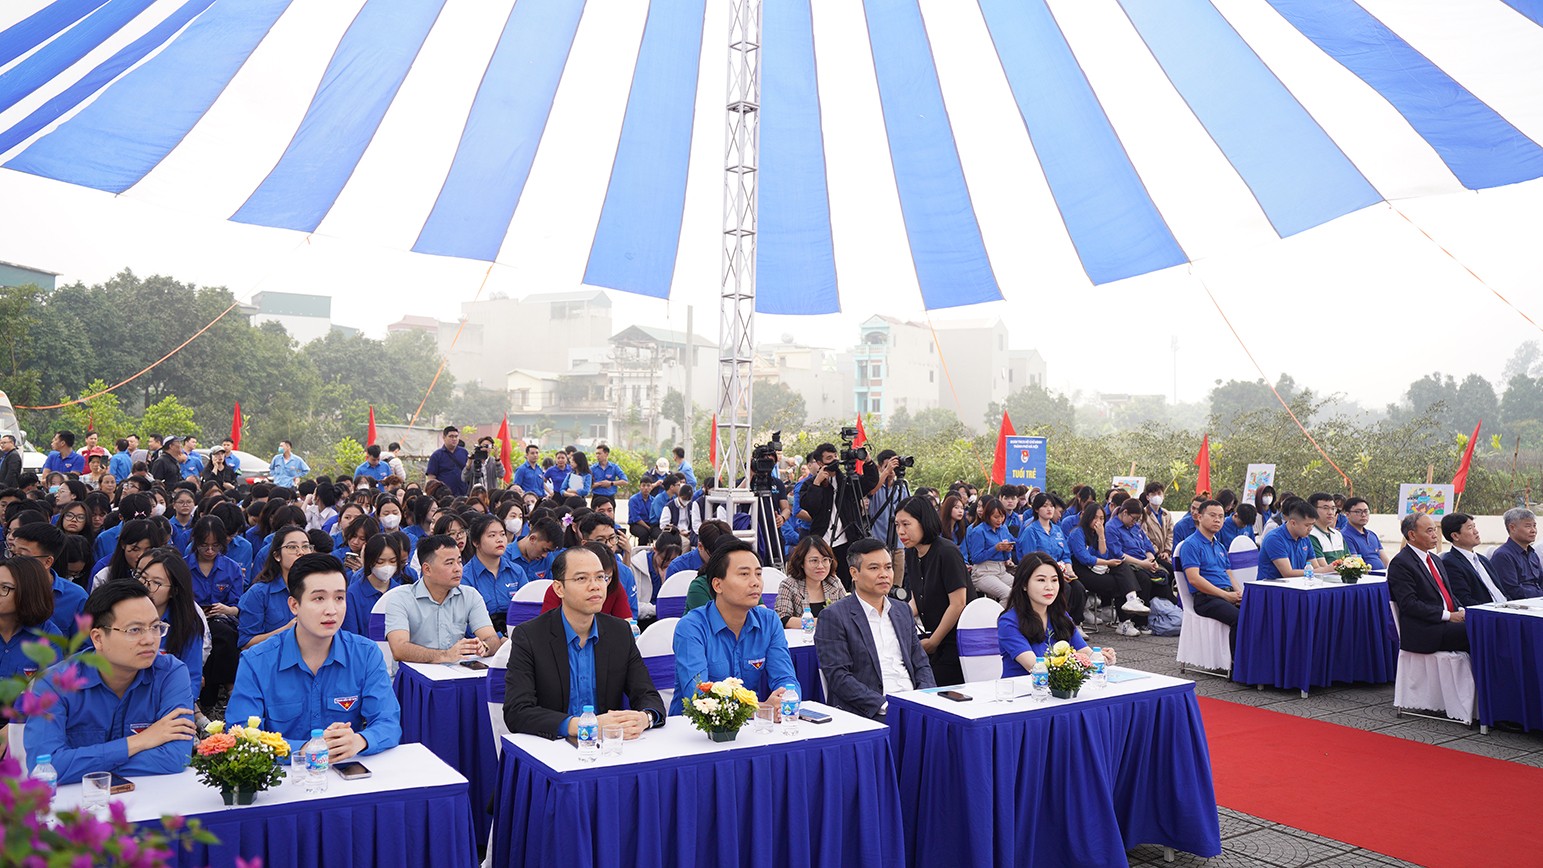 Chương trình có sự tham dự của lãnh đạo Thành đoàn Hà Nội, lãnh đạo huyện Gia Lâm cùng đông đảo đoàn viên, thanh niên ưu tú tham dự